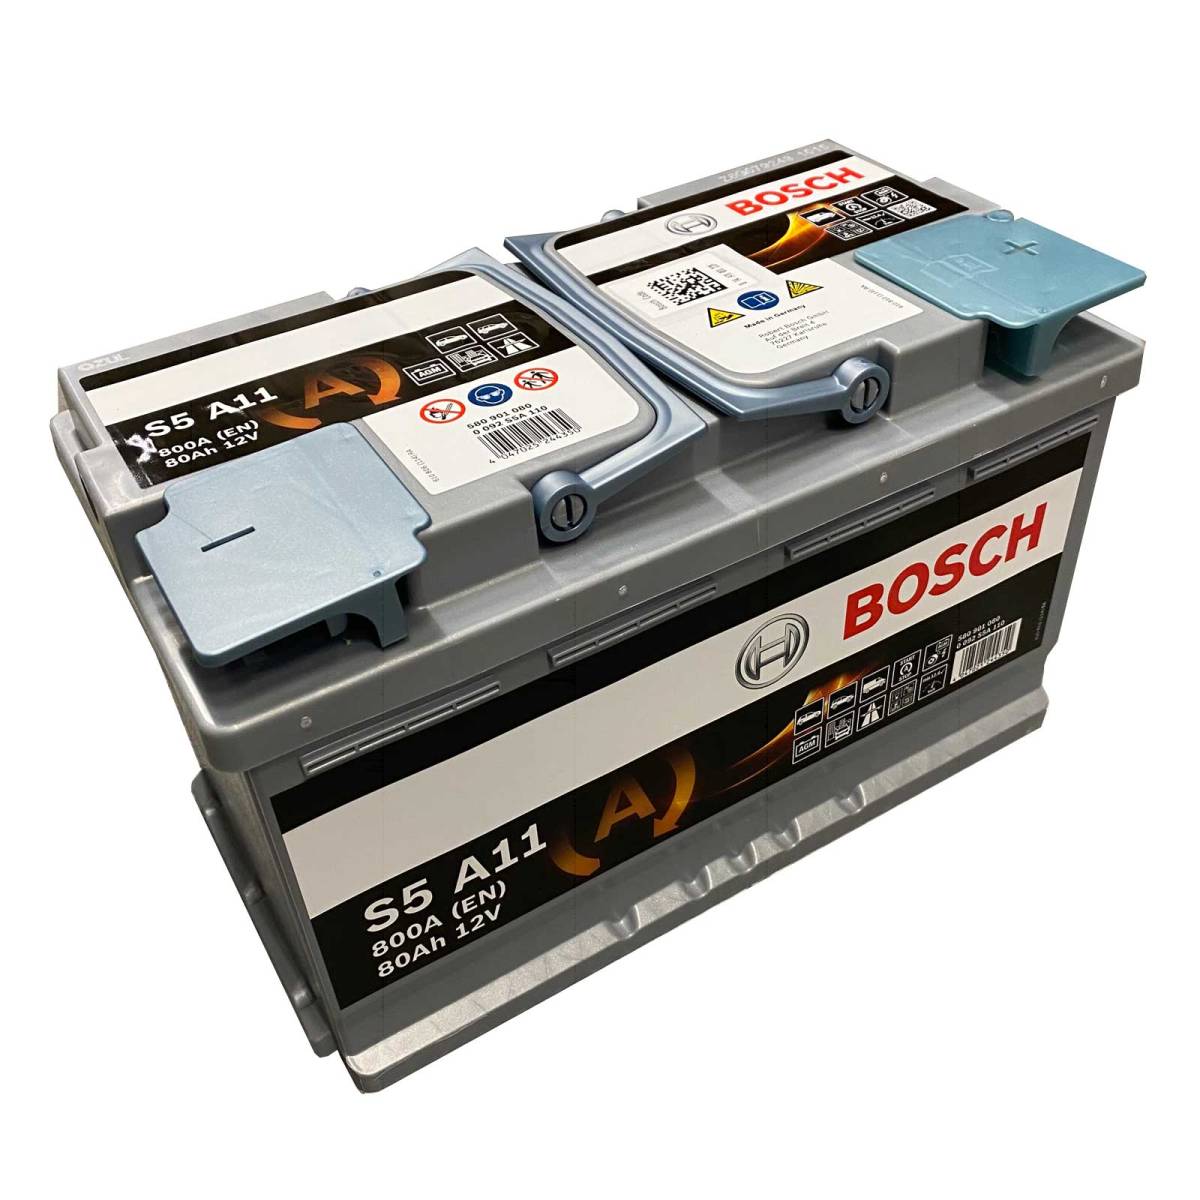 Bosch S5 A11 car battery AGM Start-Stop 580 901 080 12V 80 Ah 800A, Starter batteries, Boots & Marine, Batteries by application